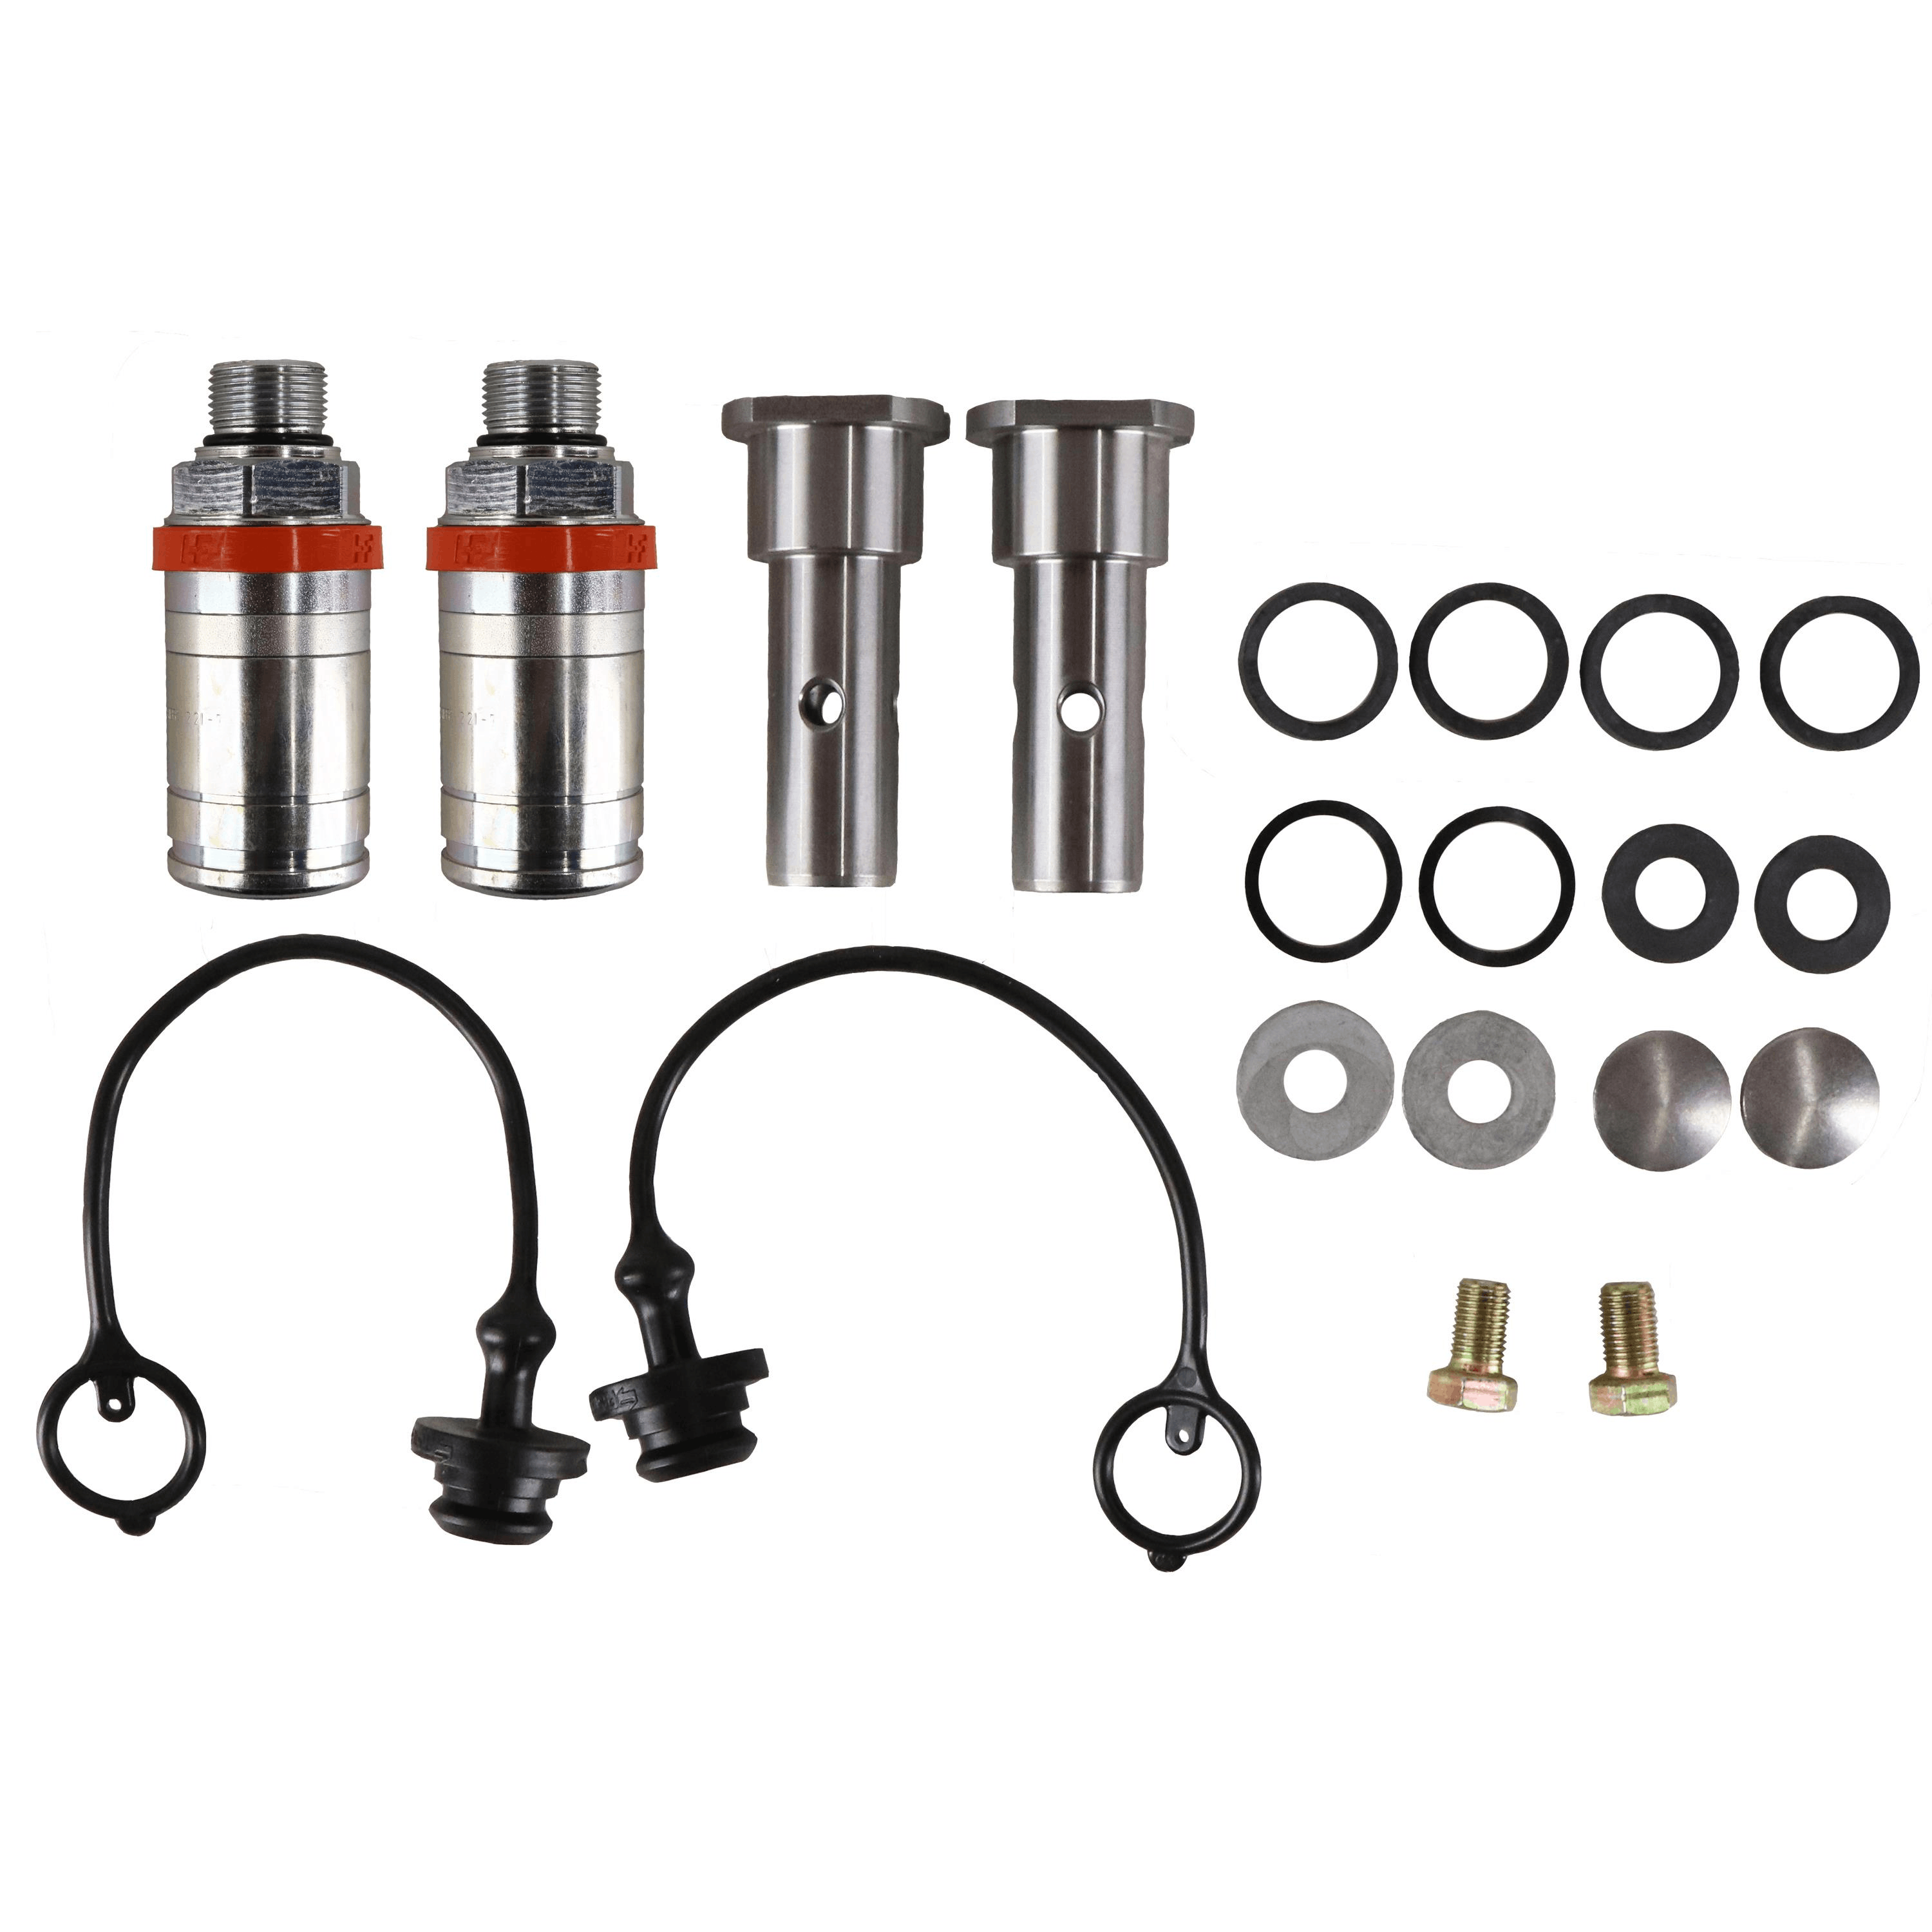 Hydraulic Coupler Kit for John Deere 20, 30, 40 Series, Push-Pull Coupler – 8302335